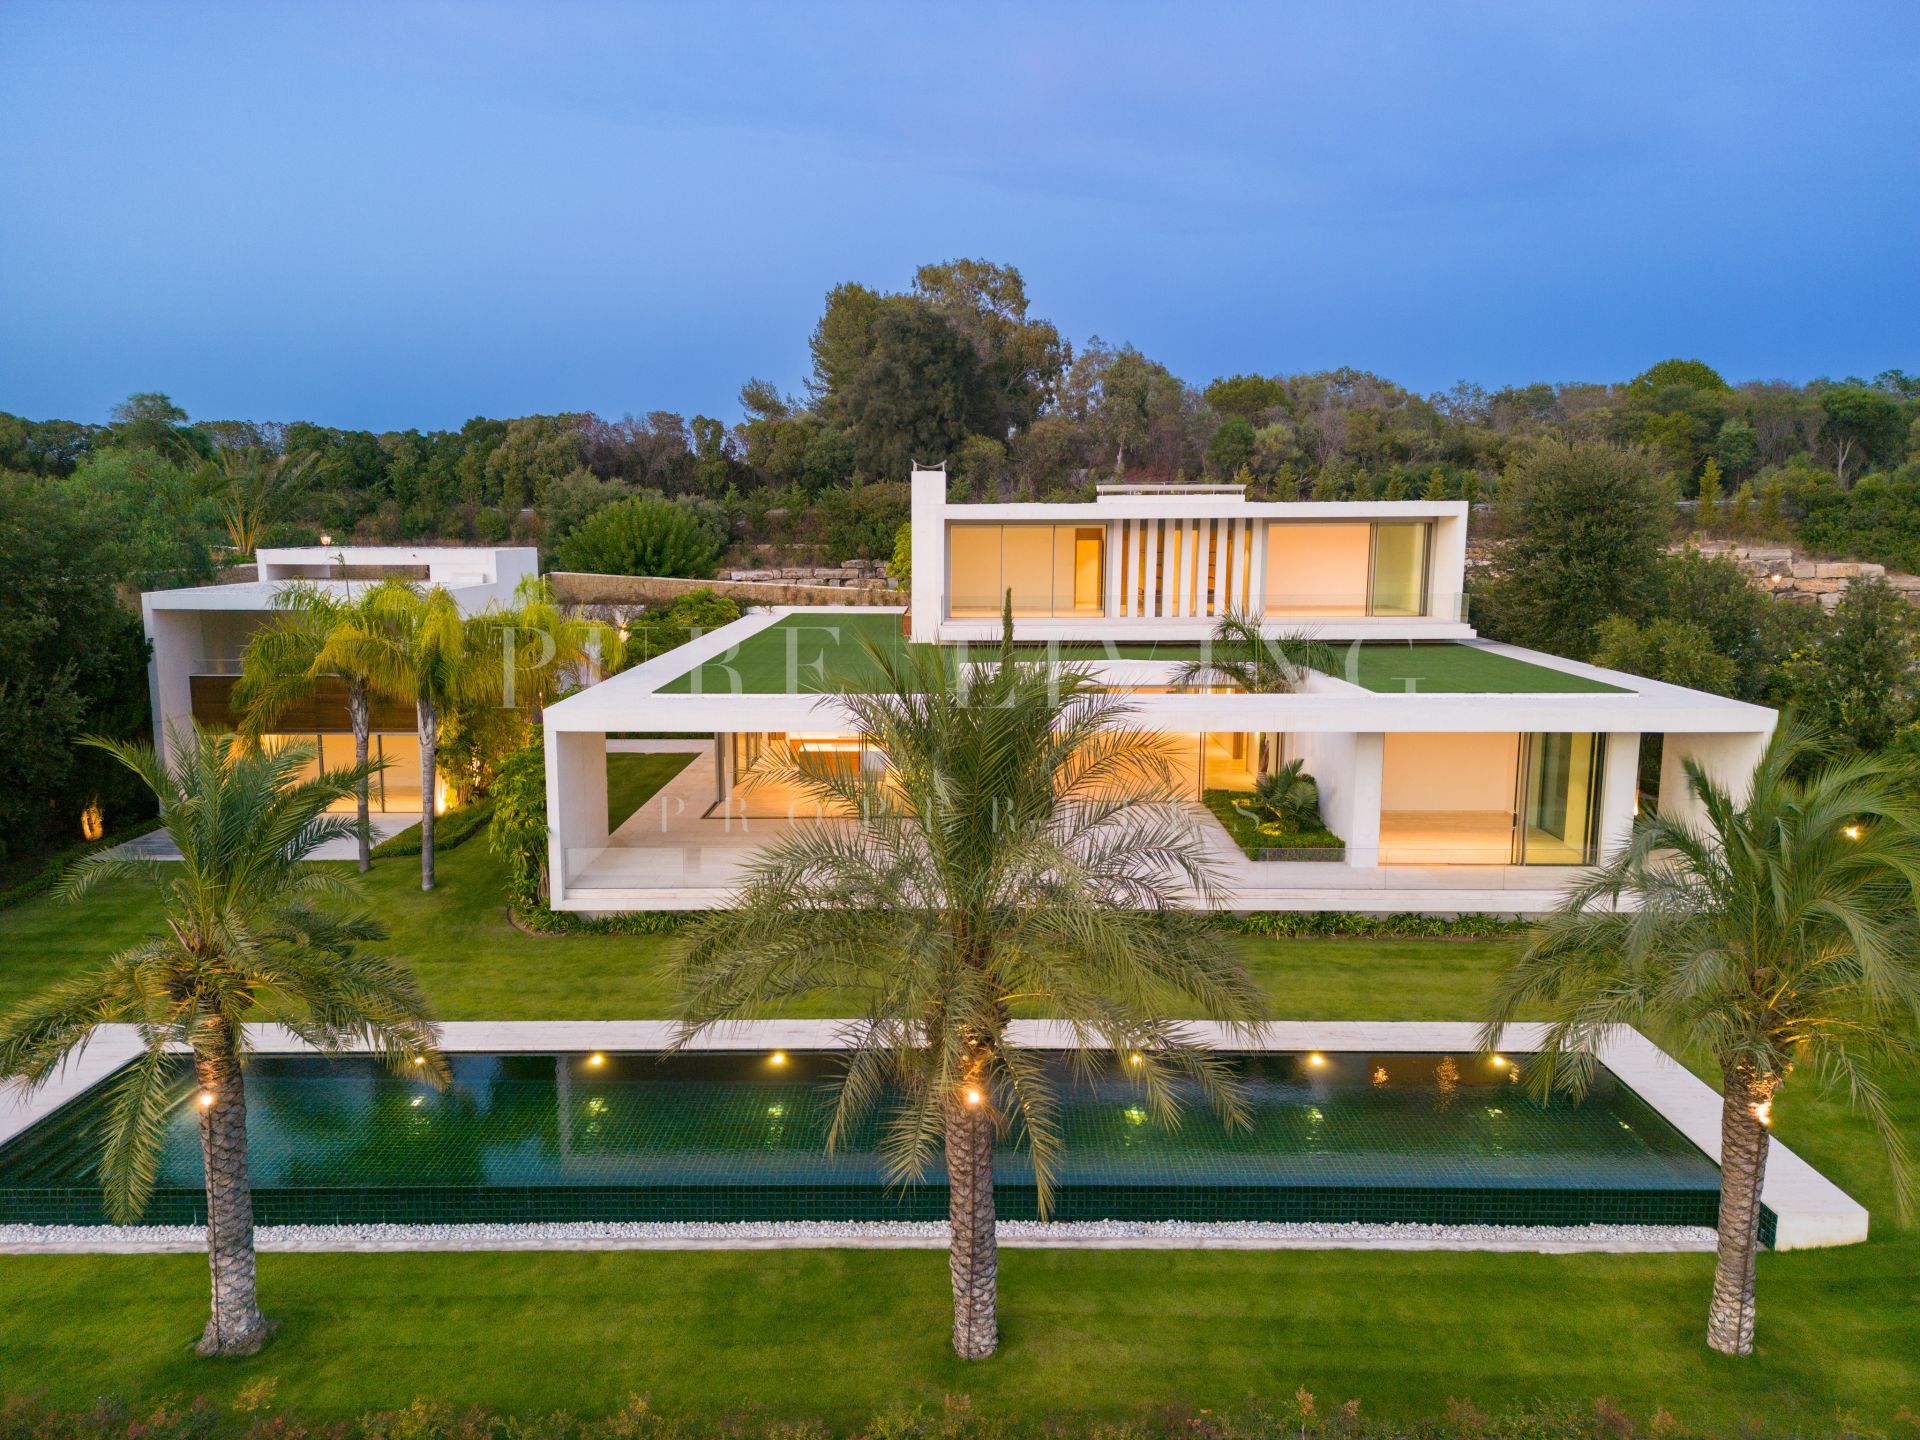 Excepcional villa contemporánea de cinco dormitorios con inmejorables vistas al campo de golf y a la costa mediterránea en Finca Cortesín n, Casares.